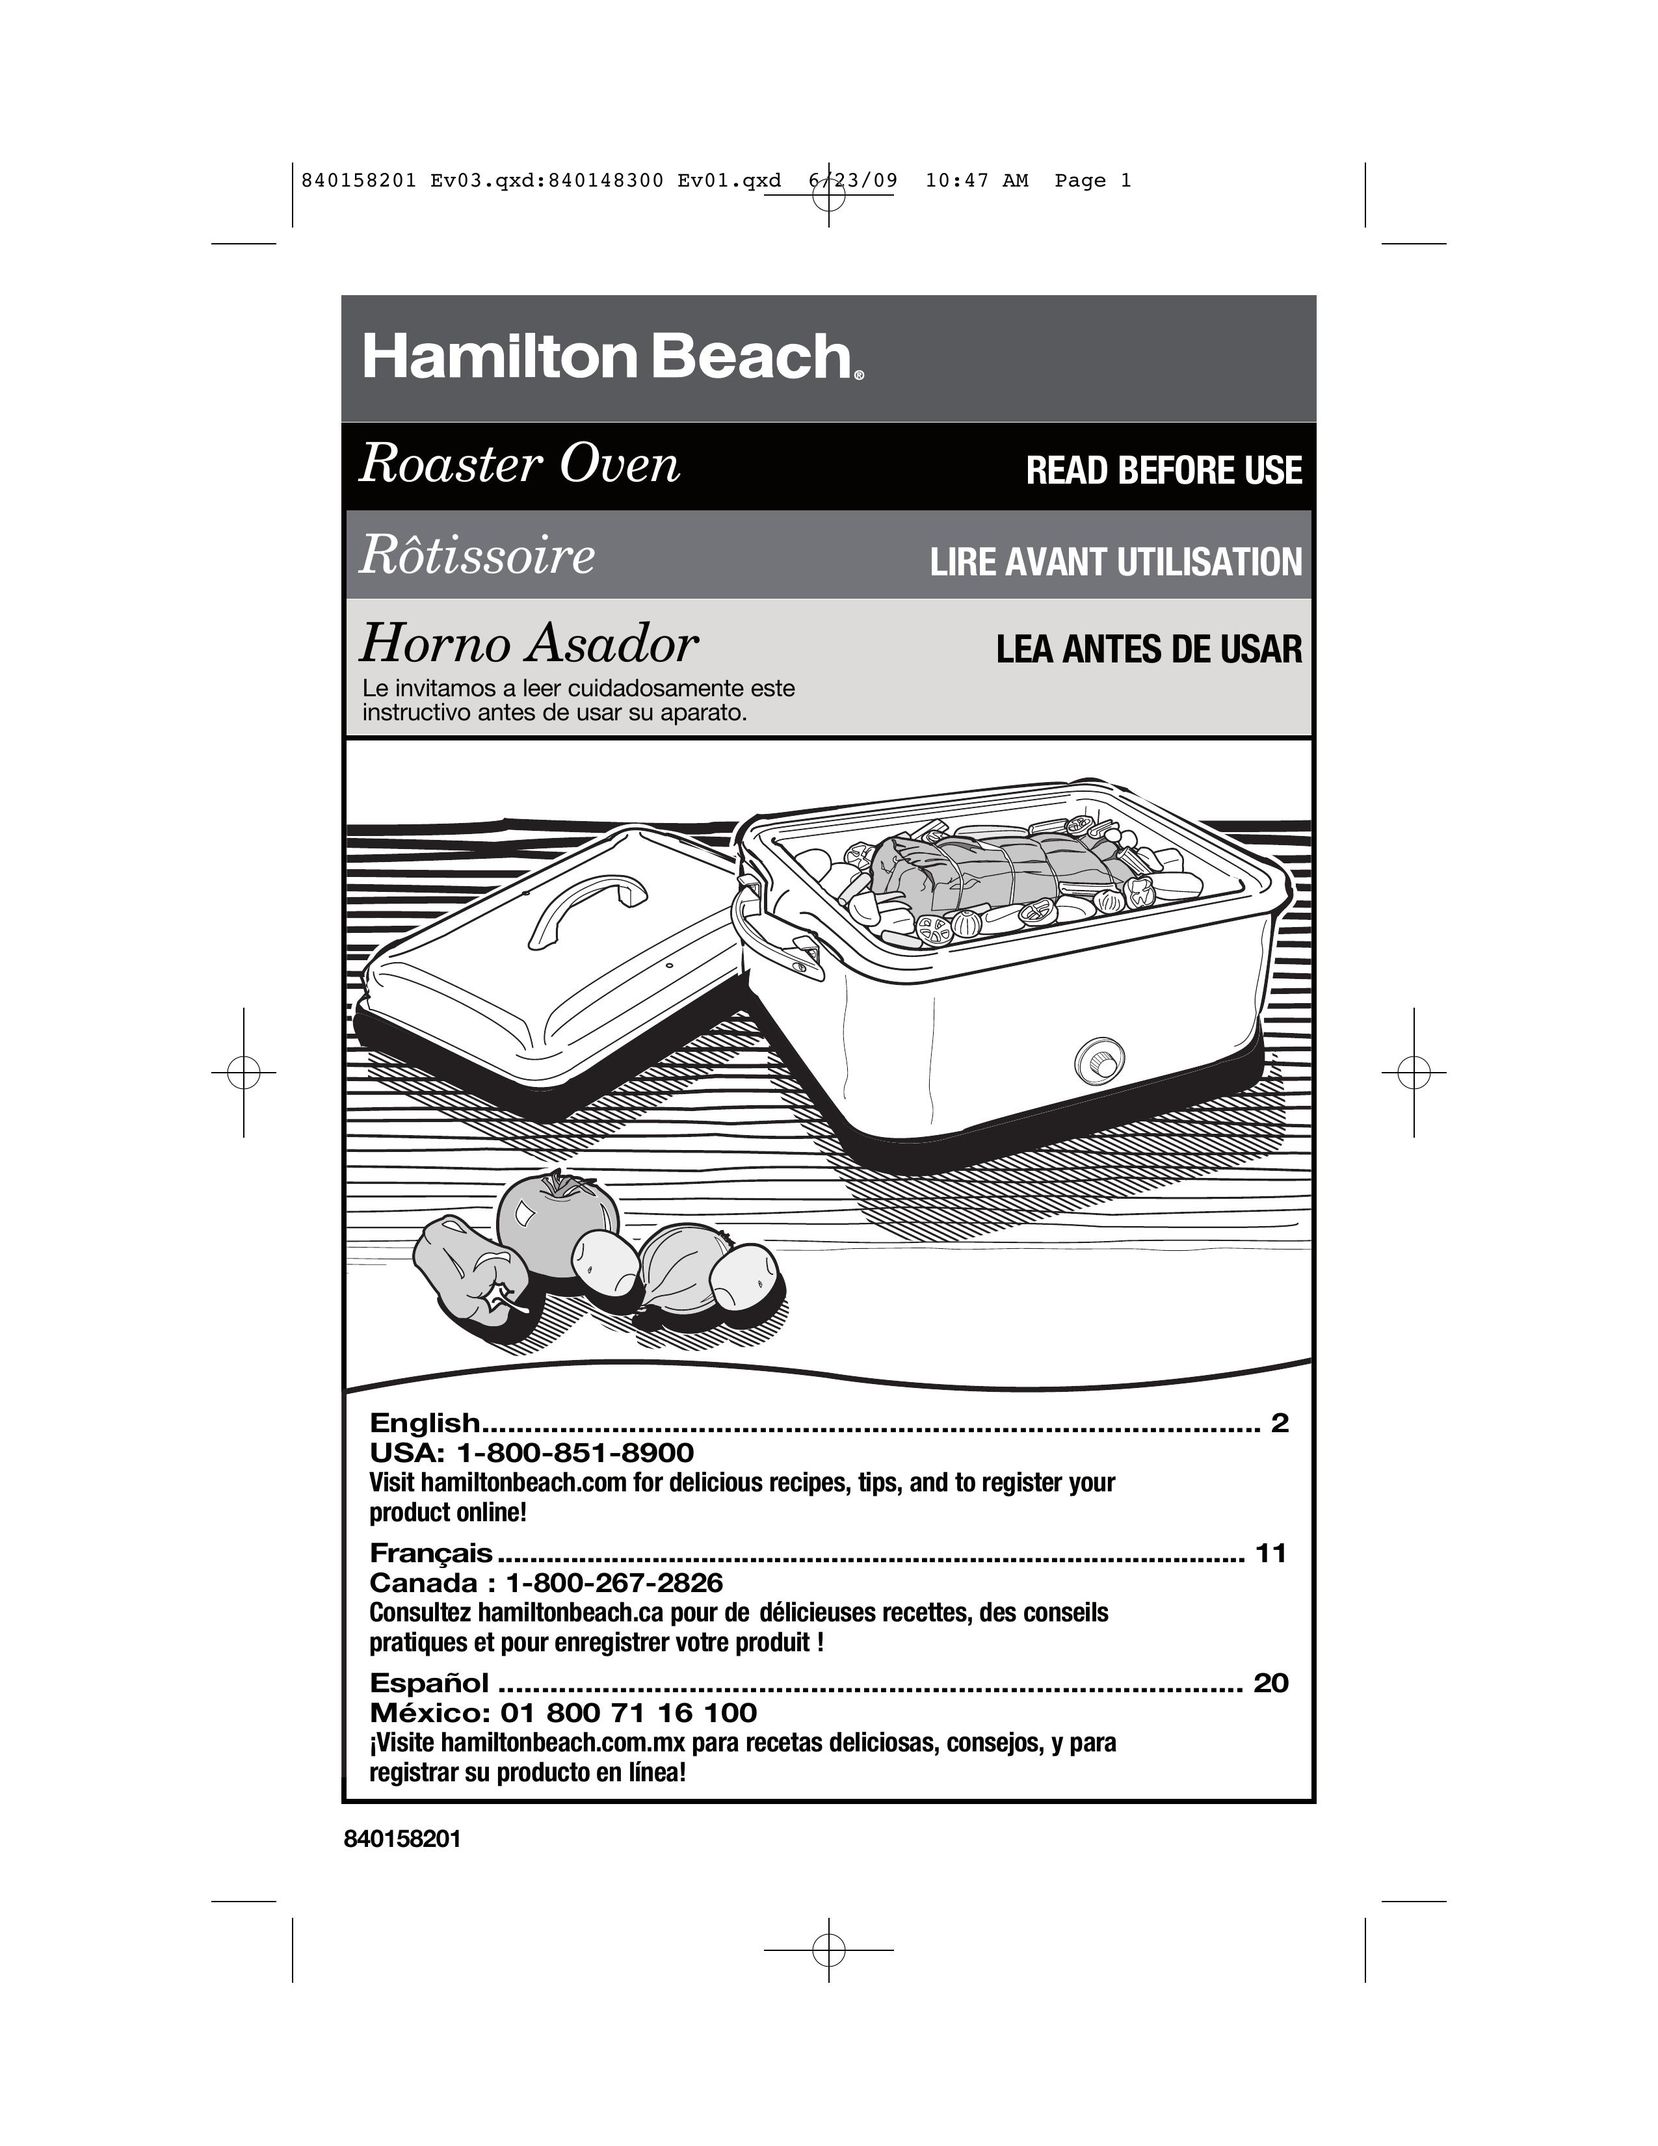 Hamilton Beach 840158201 Oven User Manual